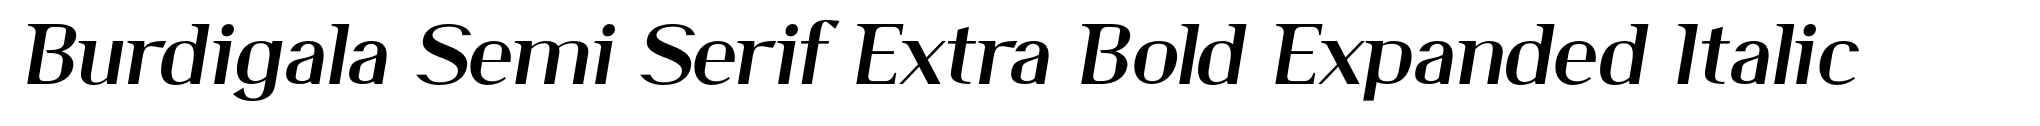 Burdigala Semi Serif Extra Bold Expanded Italic image